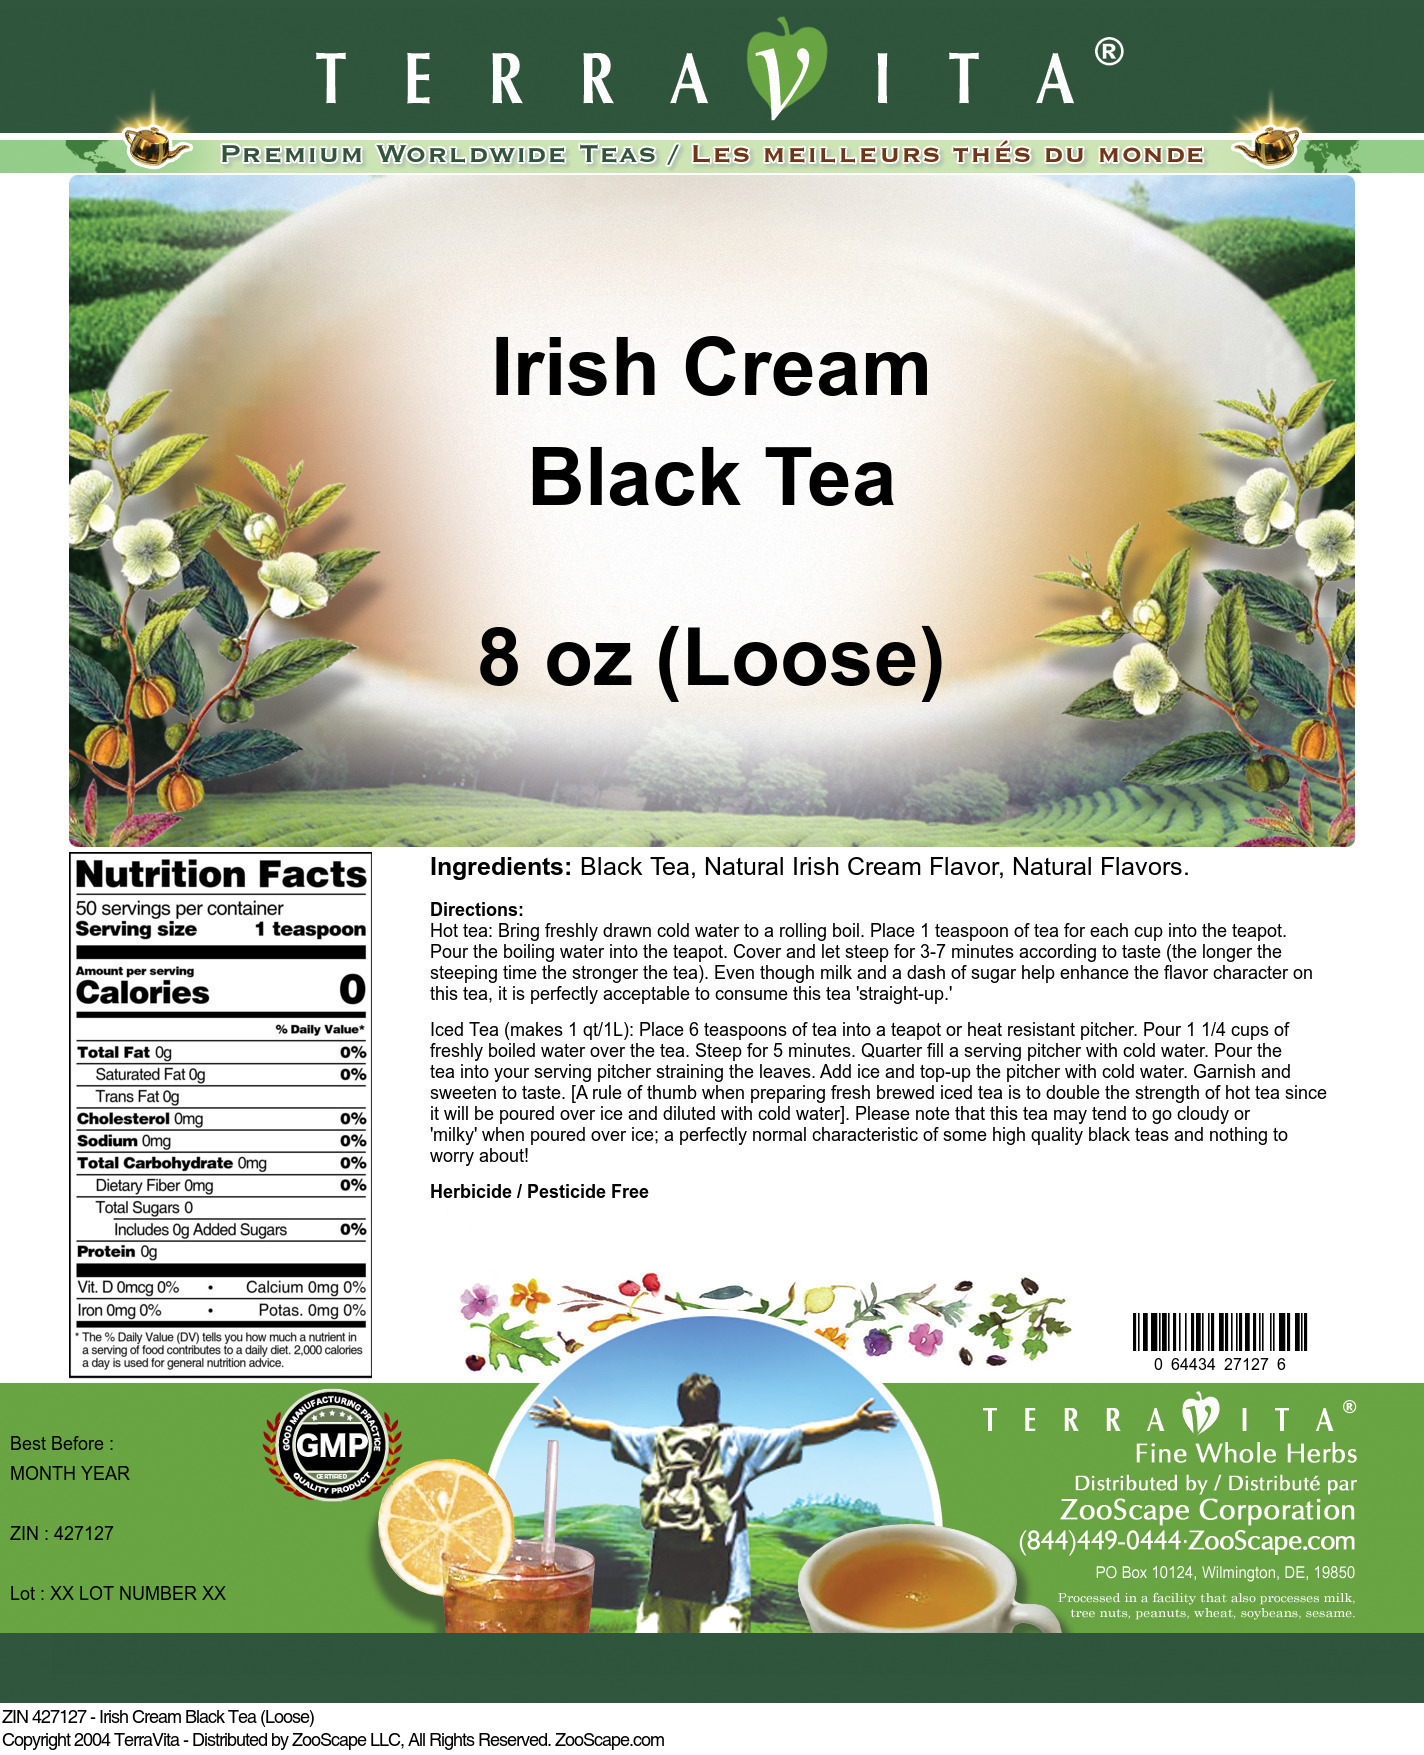 Irish Cream Black Tea (Loose) - Label